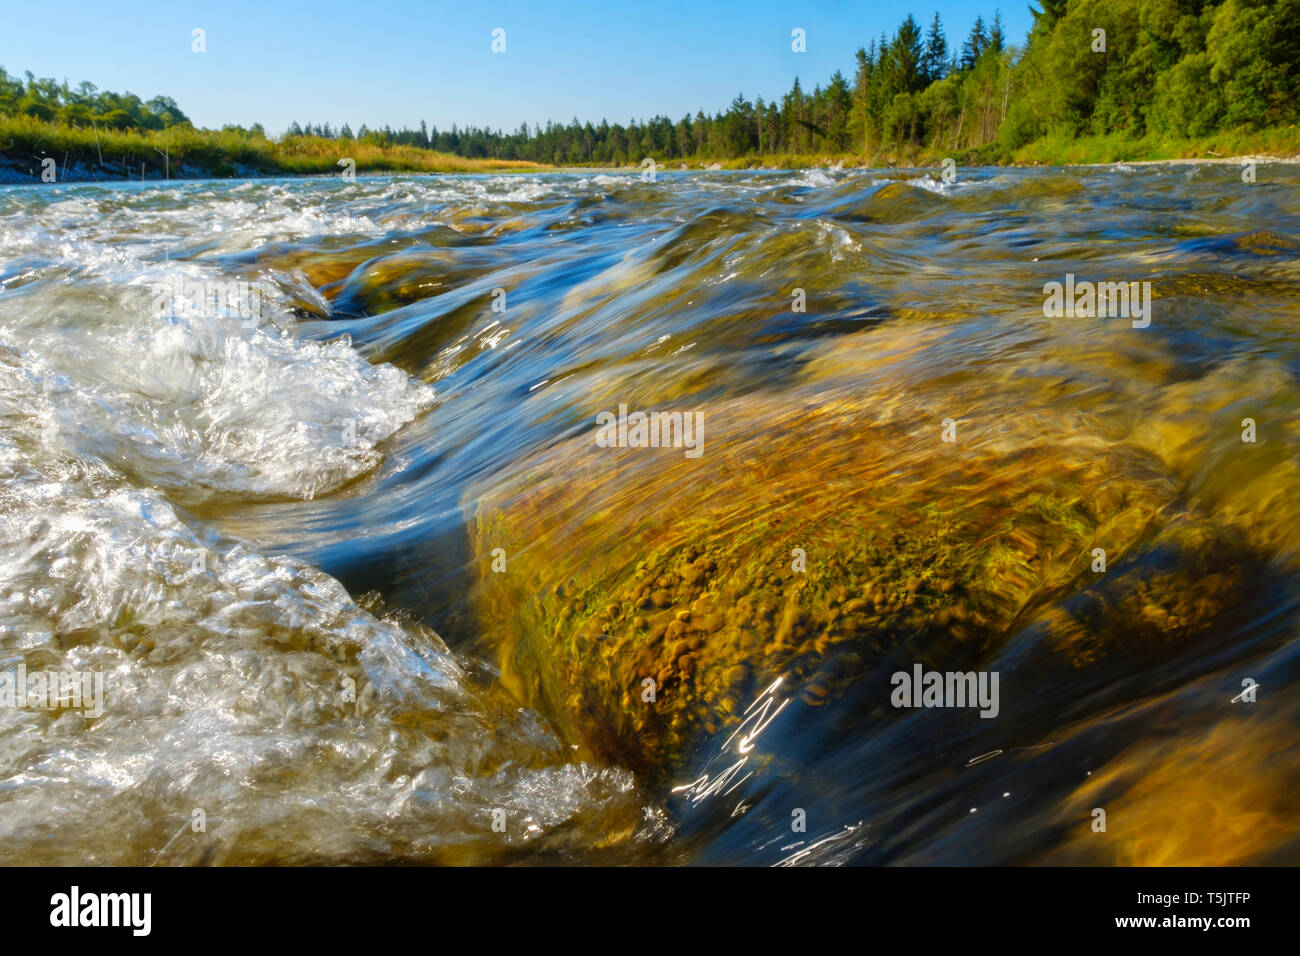 Germany, Bavaria, réserve naturelle Isarauen, streaming l'eau claire de l'Isar Banque D'Images